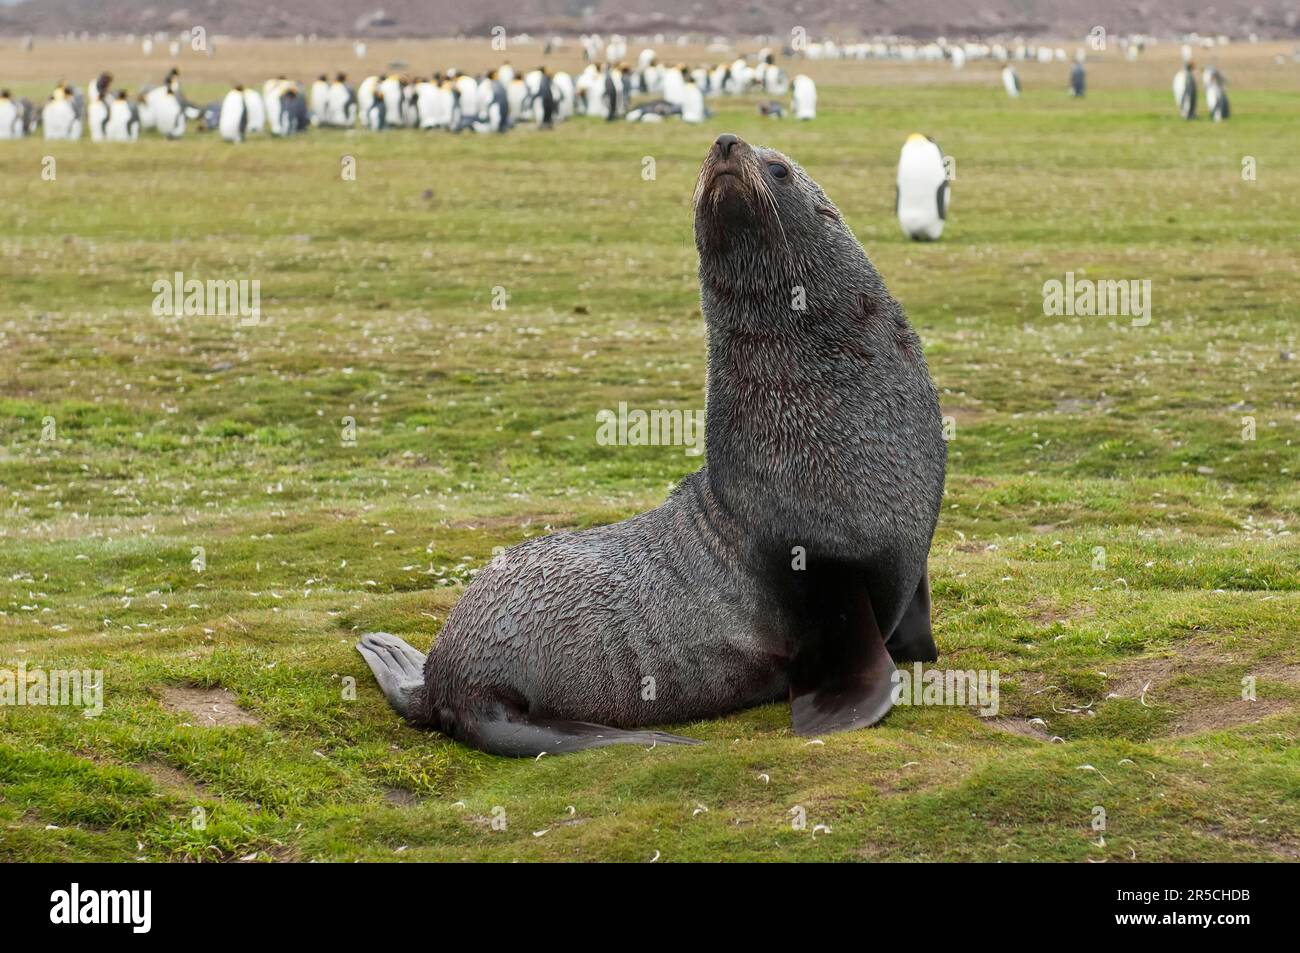 Kerguelen-Seebären, Salisbury Plains, Südgeorgien, antarktis-Seebären (Arctocephalus gazella) Stockfoto